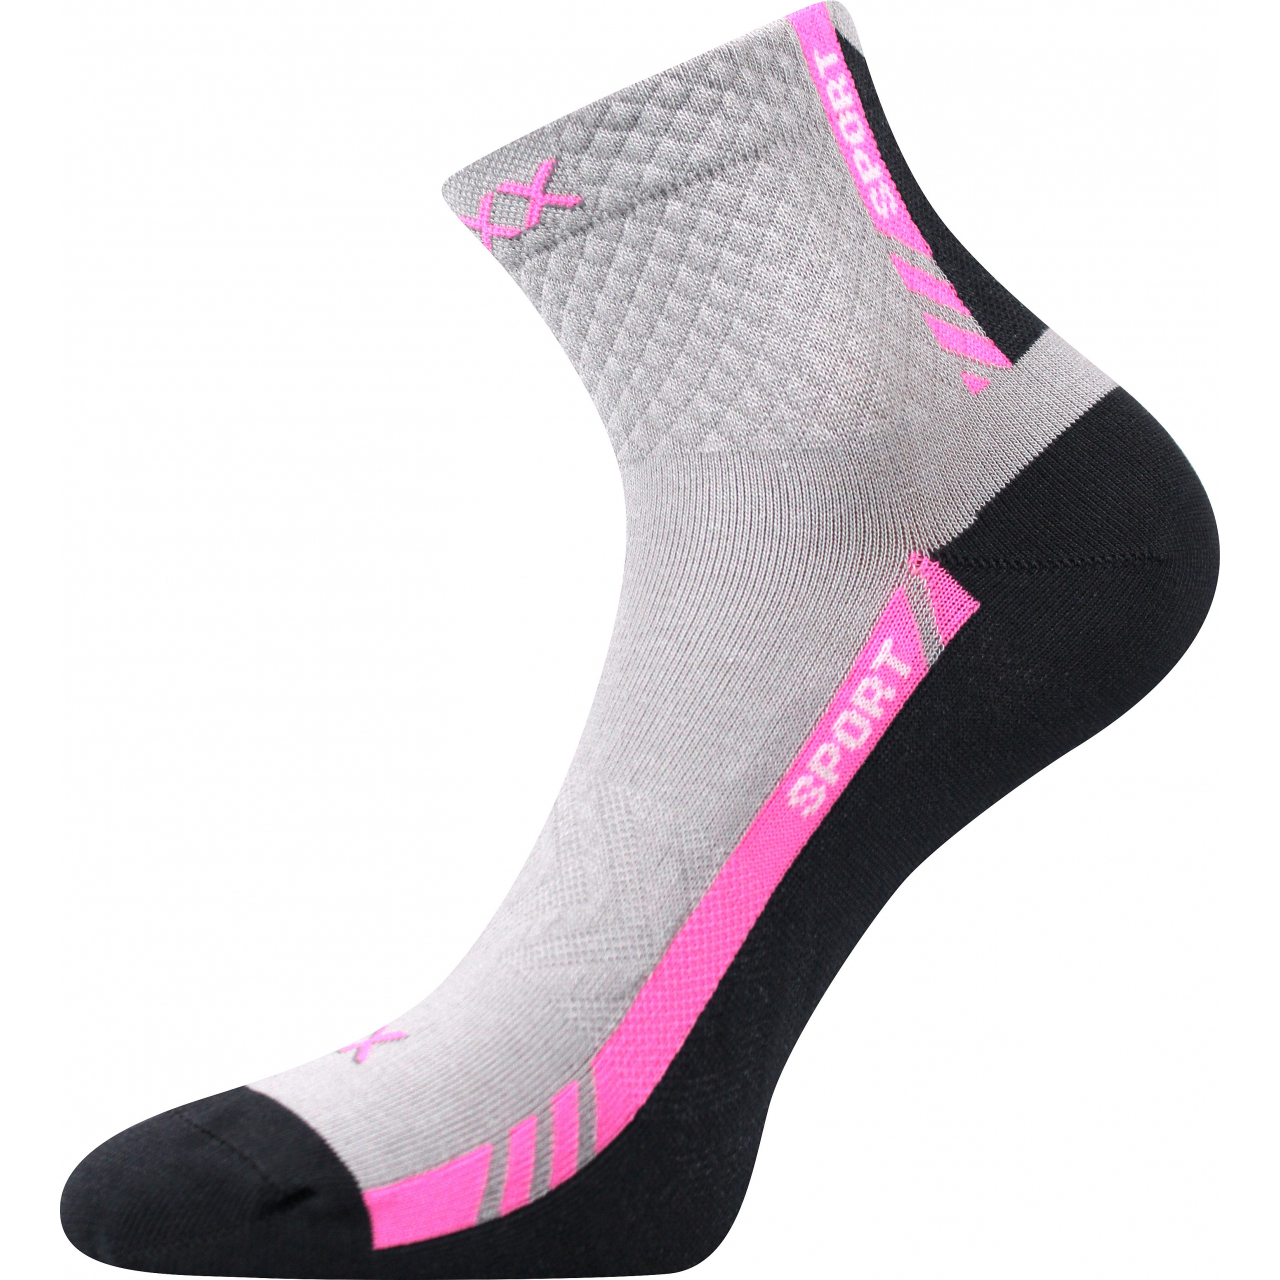 Ponožky slabé sportovní unisex Voxx Pius - světle šedé-růžové, 35-38